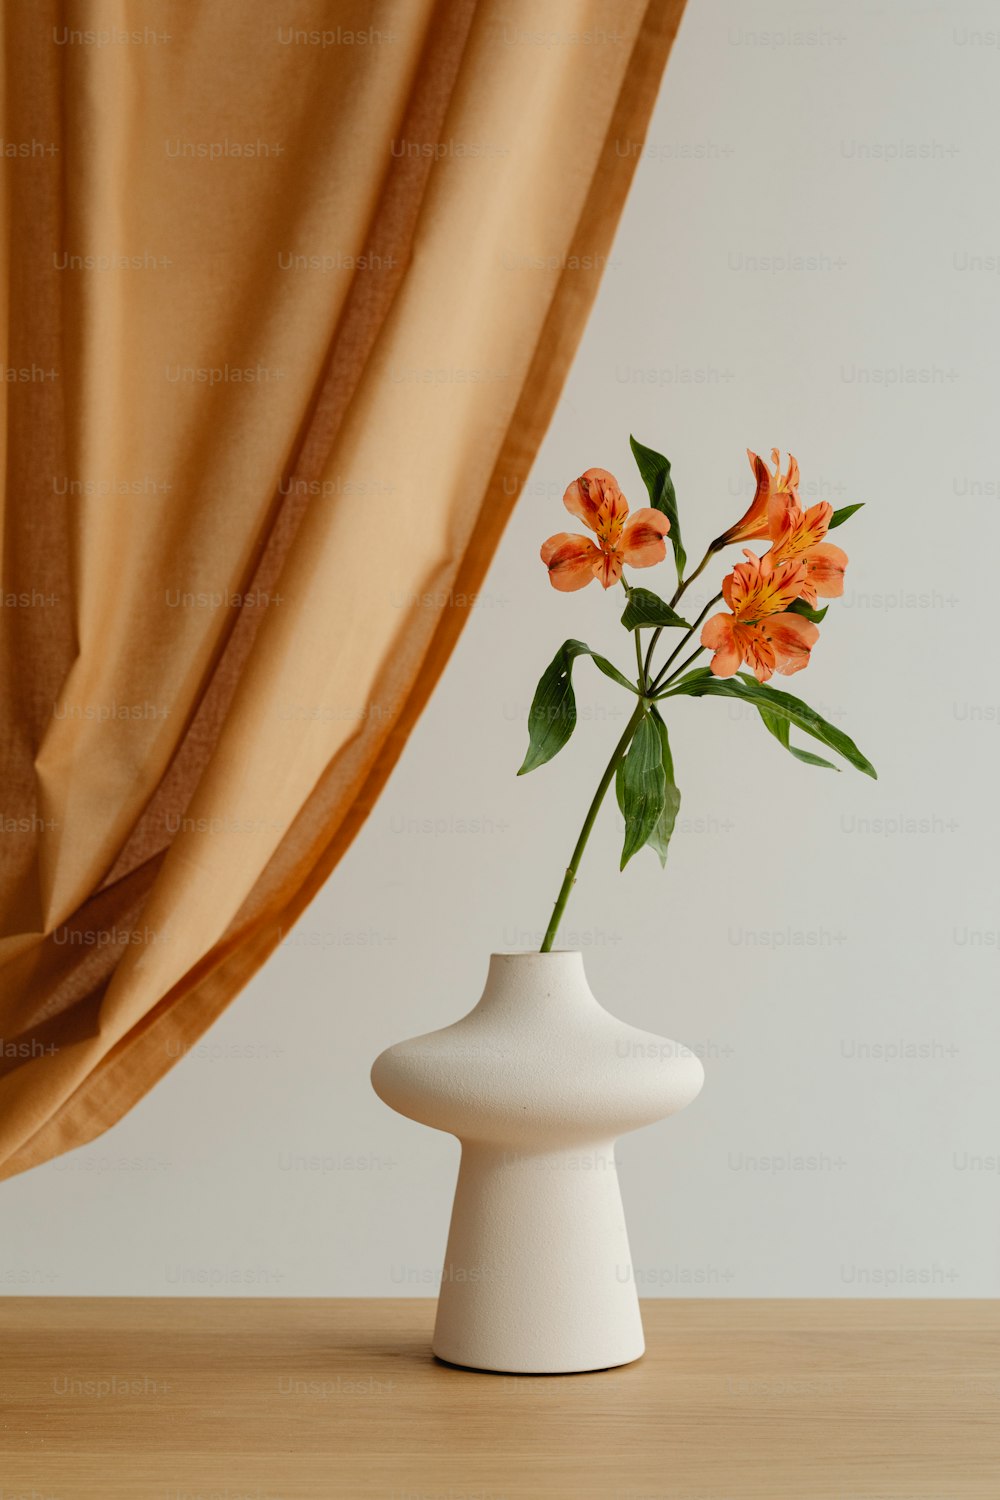 um vaso branco com flores alaranjadas nele